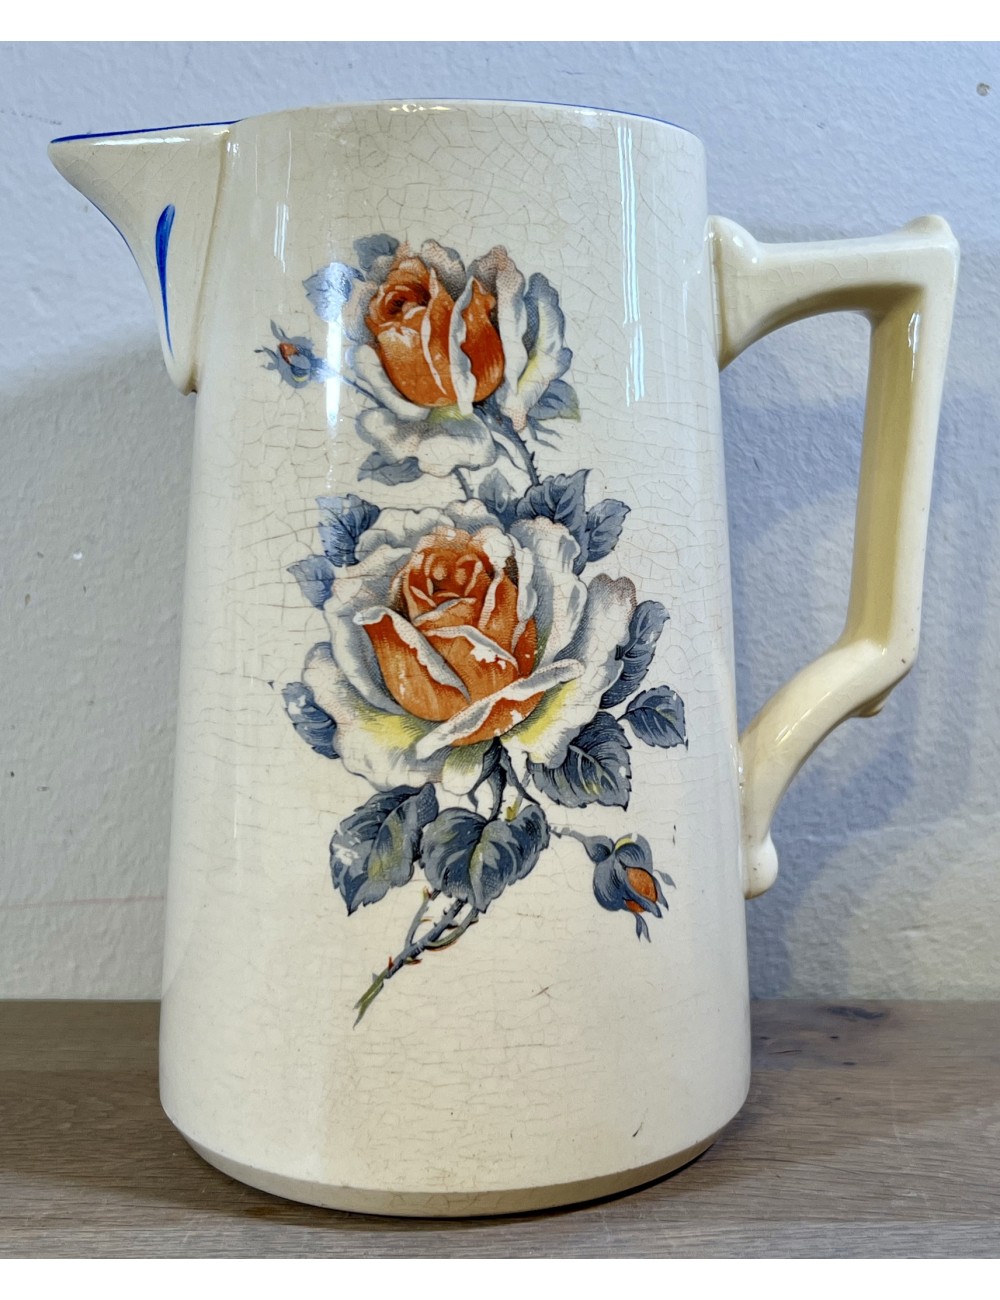 Water jug / Jug - Amandinoise / St. Amand - décor of orange/yellow/grey roses